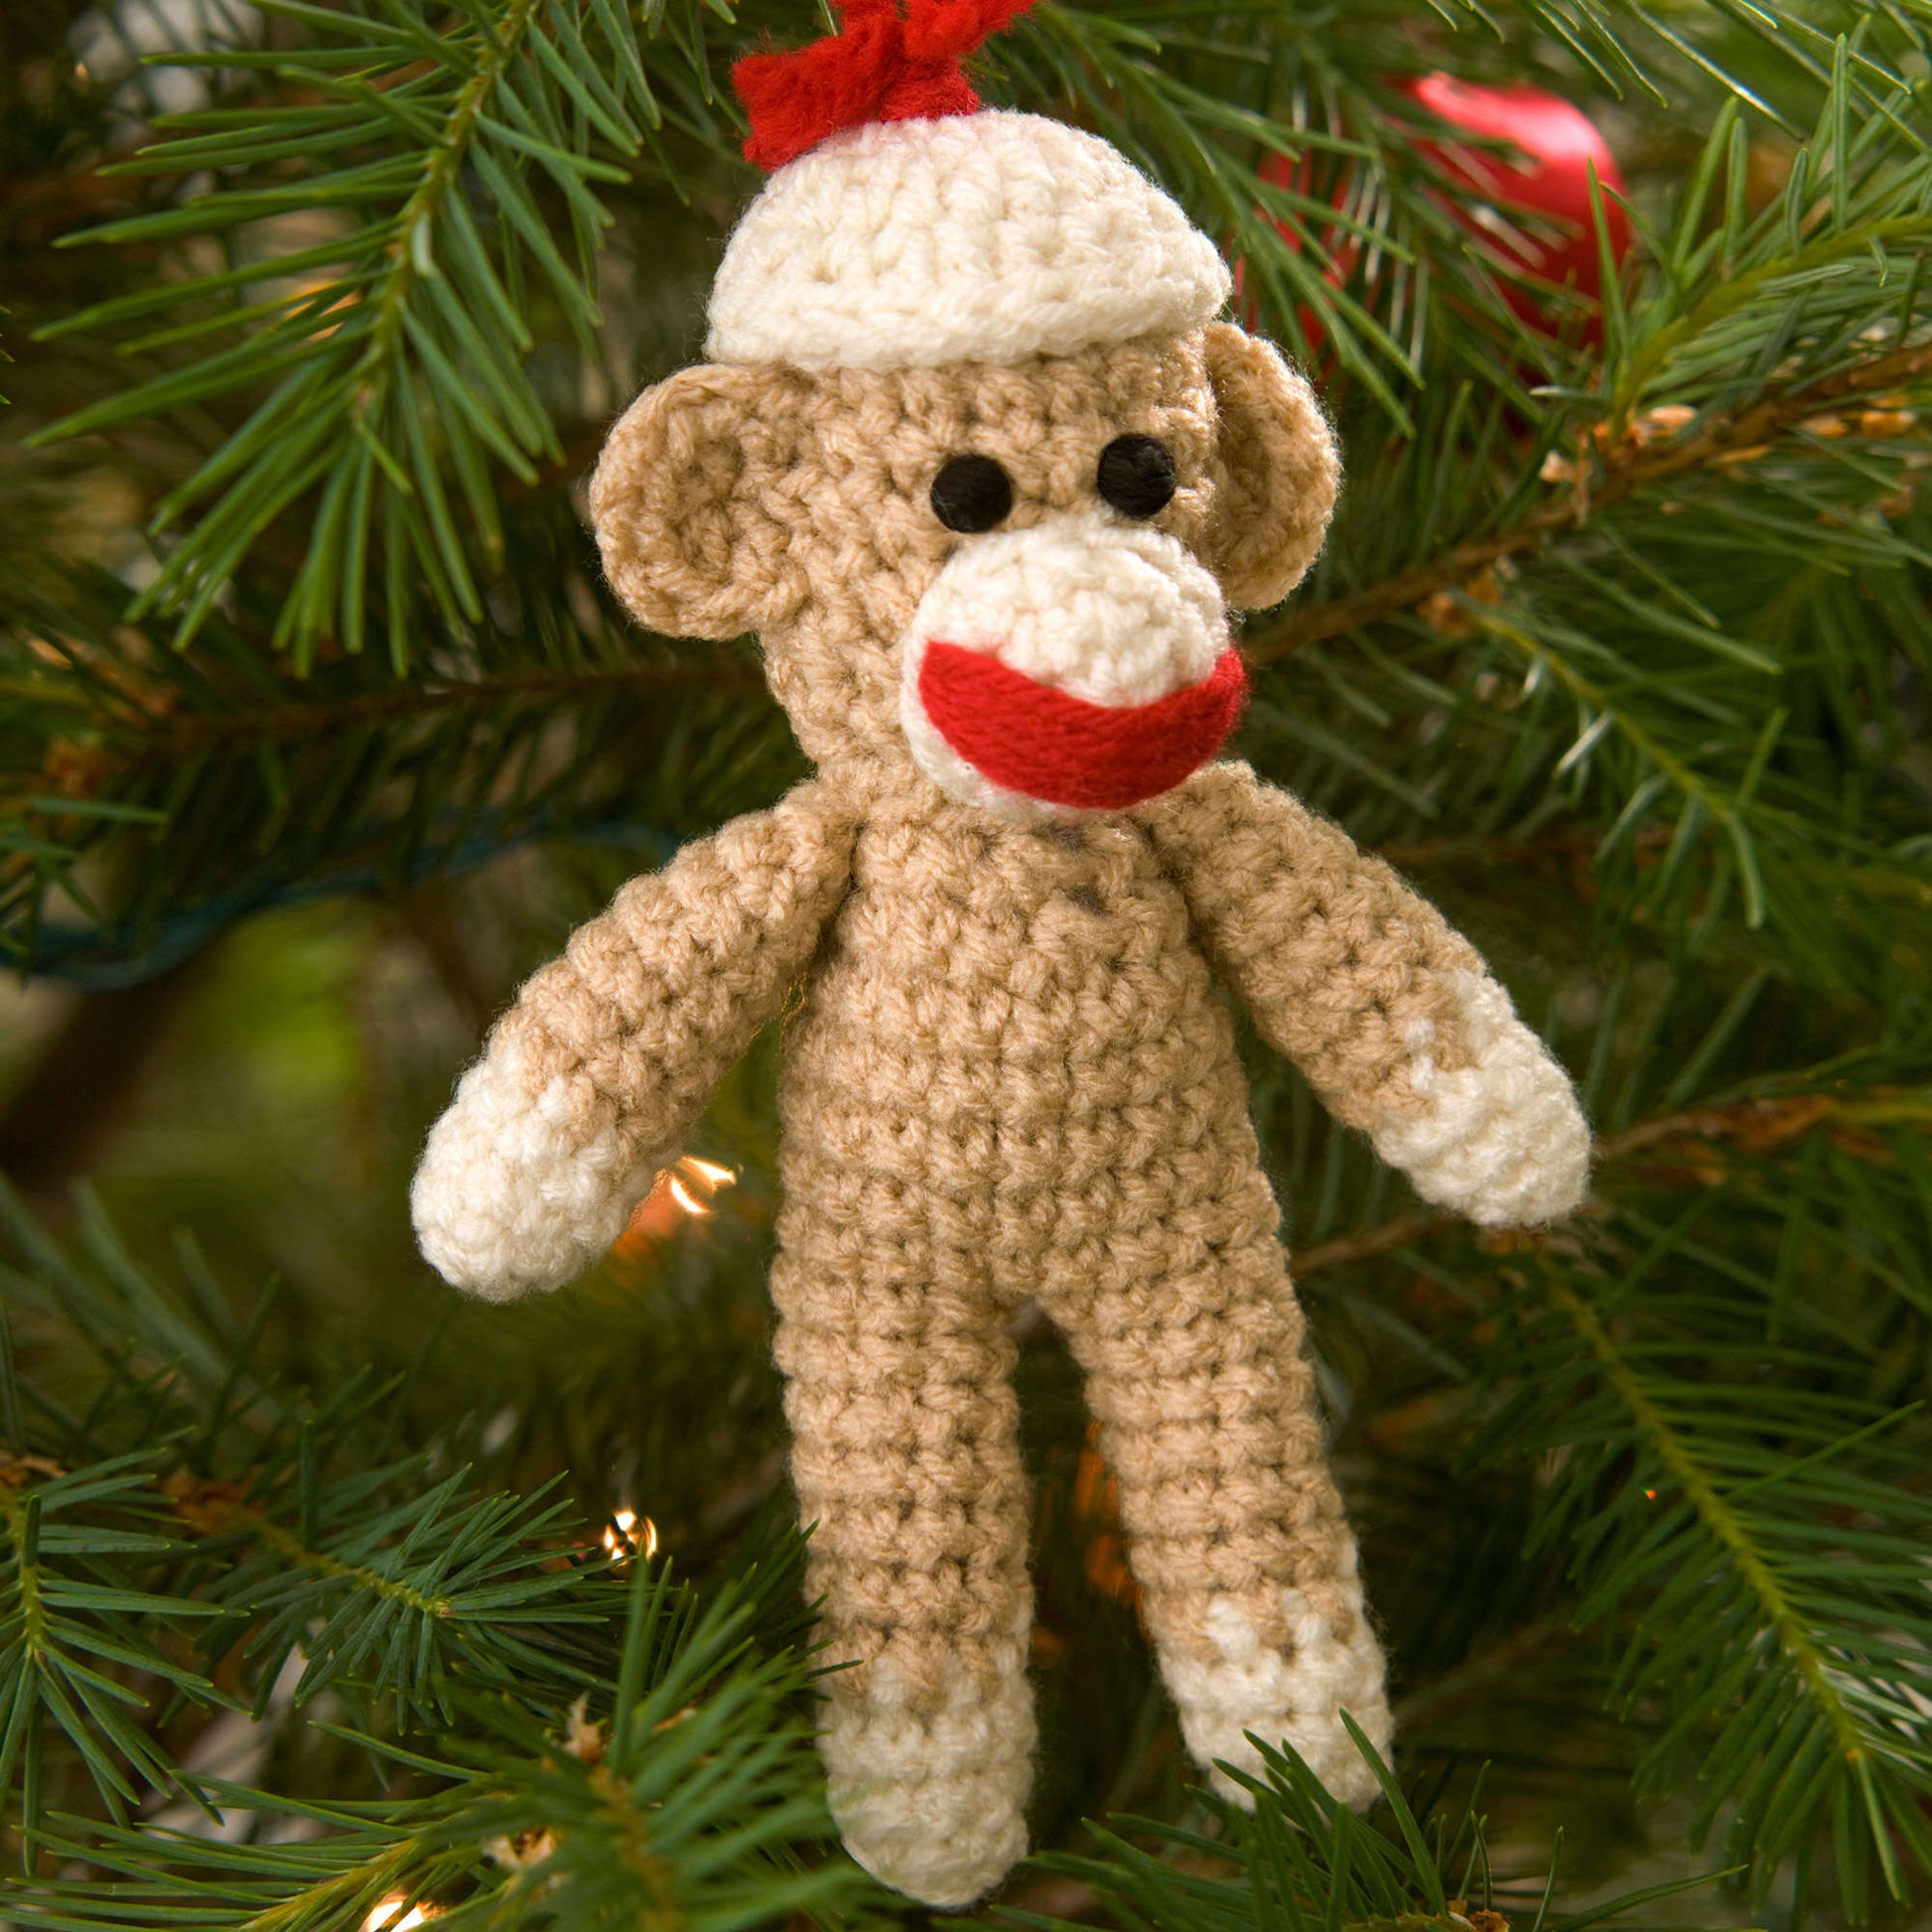 Free Red Heart Sock Monkey Ornament Crochet Pattern